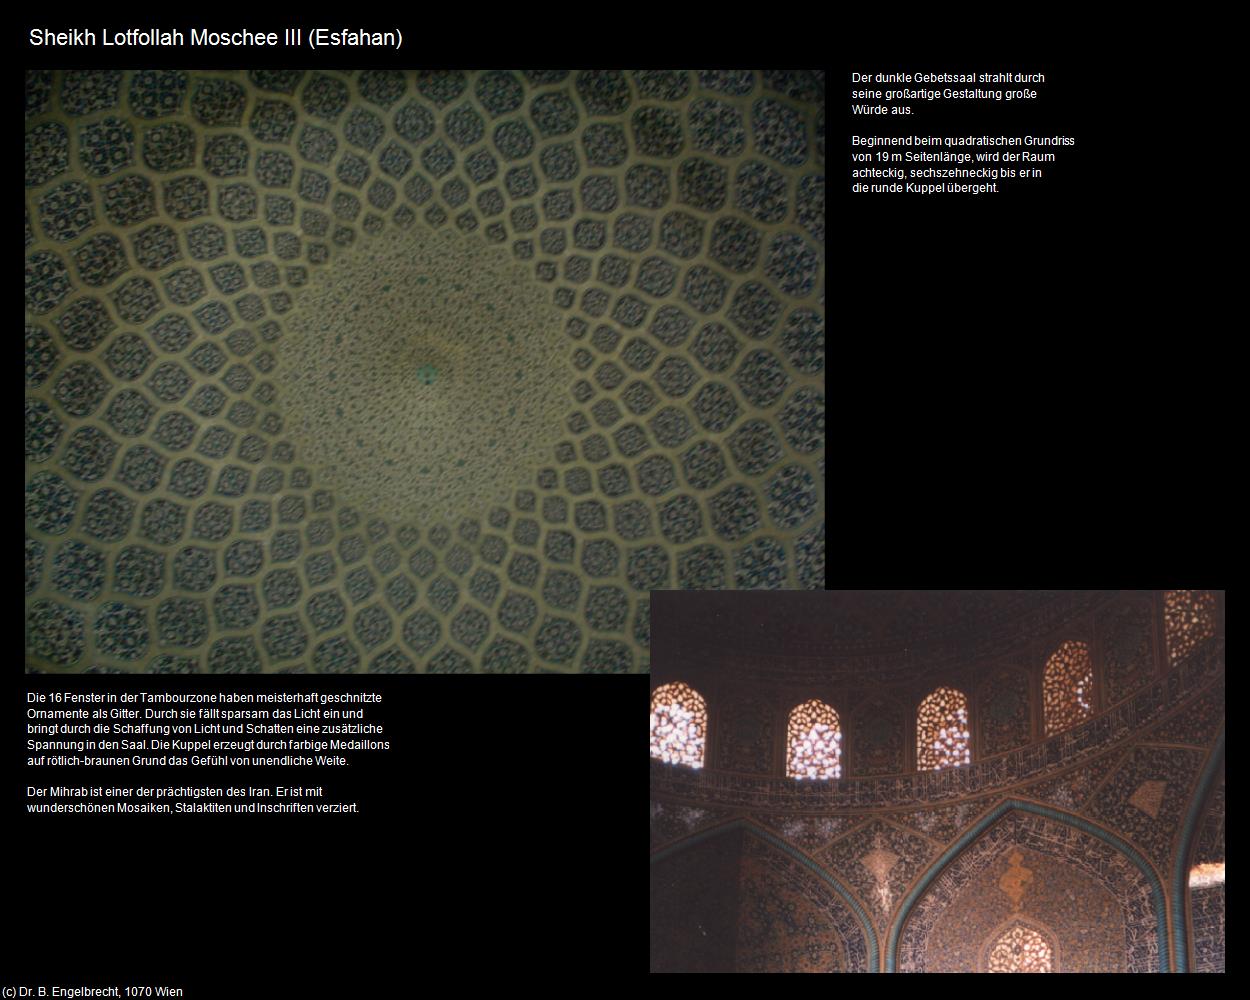 Sheikh Lotfollah Moschee III (Esfahan) in Iran